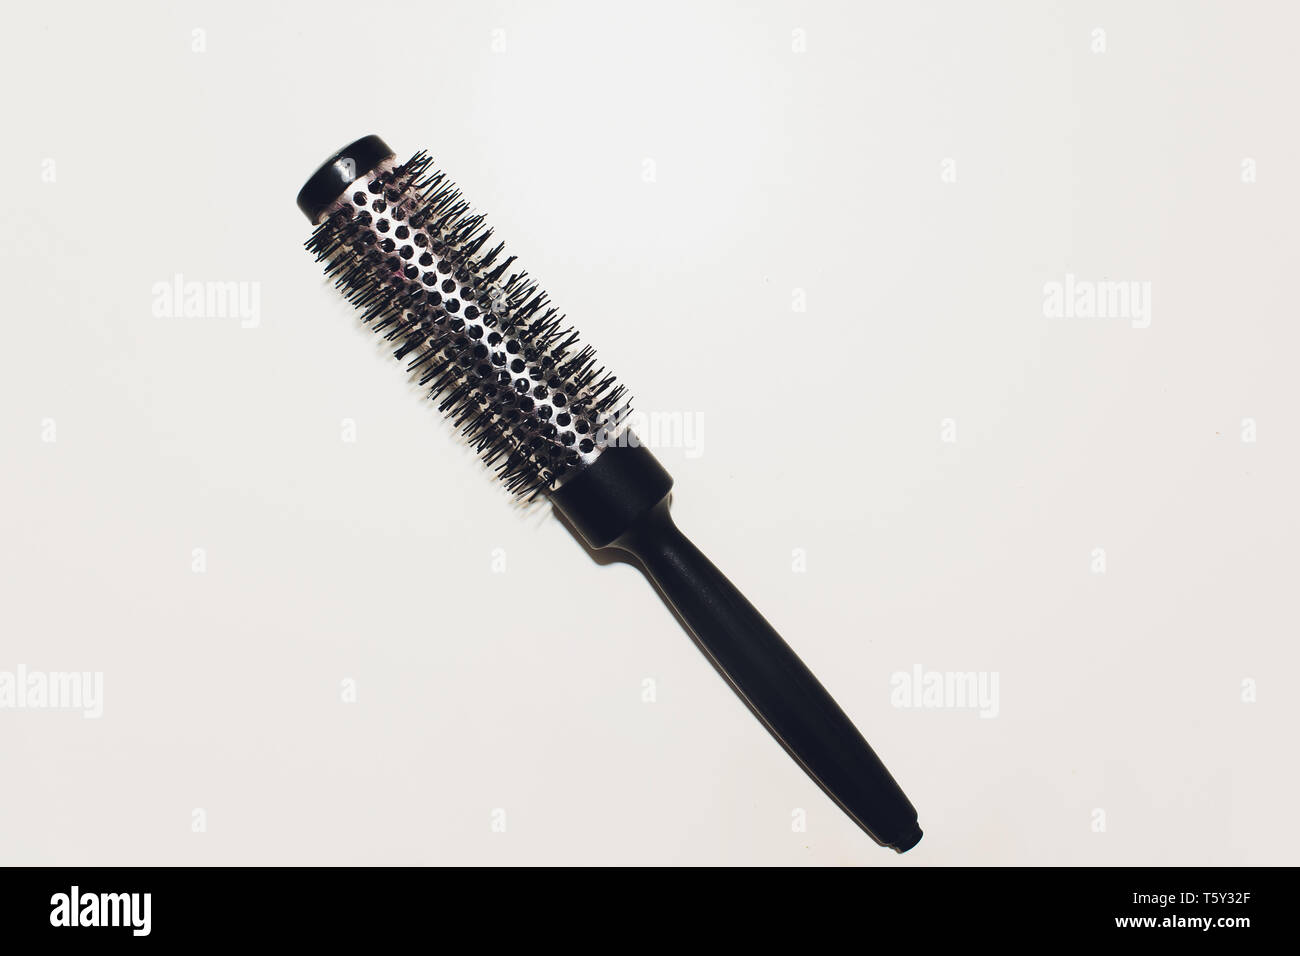 Runde Haarbürste mit einem auf einem weißen Hintergrund Stockfotografie -  Alamy